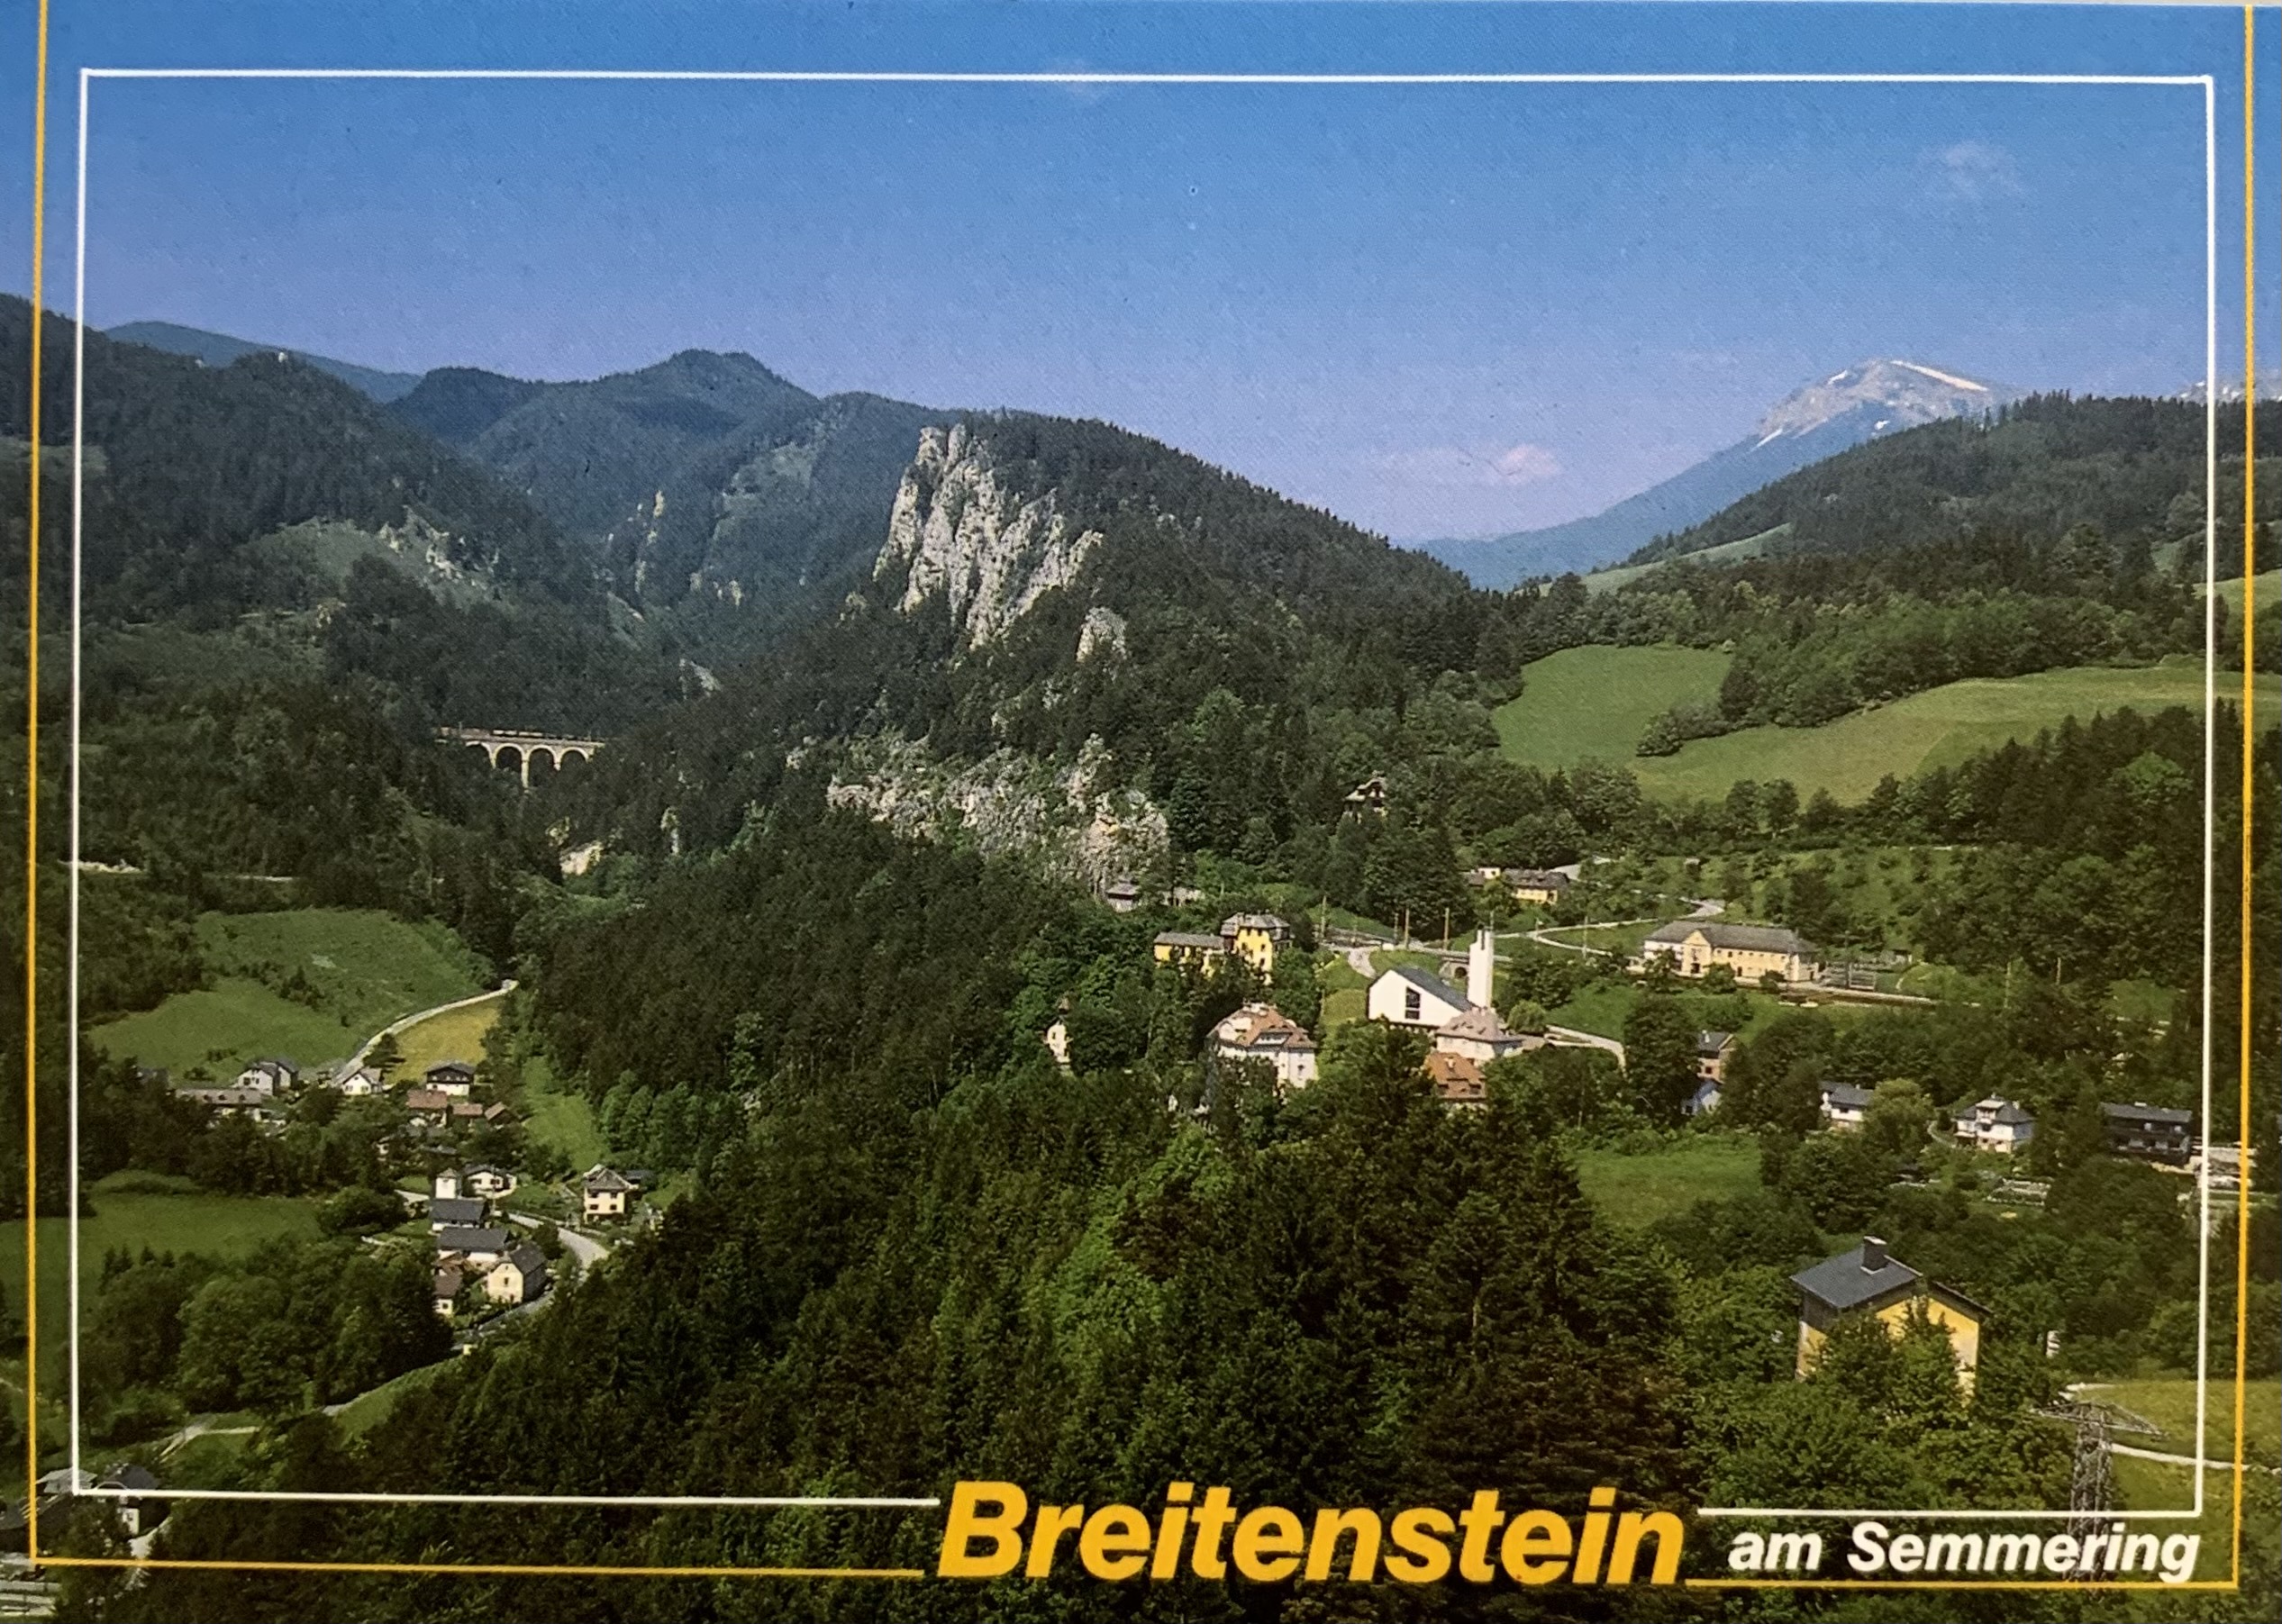 AK - Breitenstein 01-2673-18